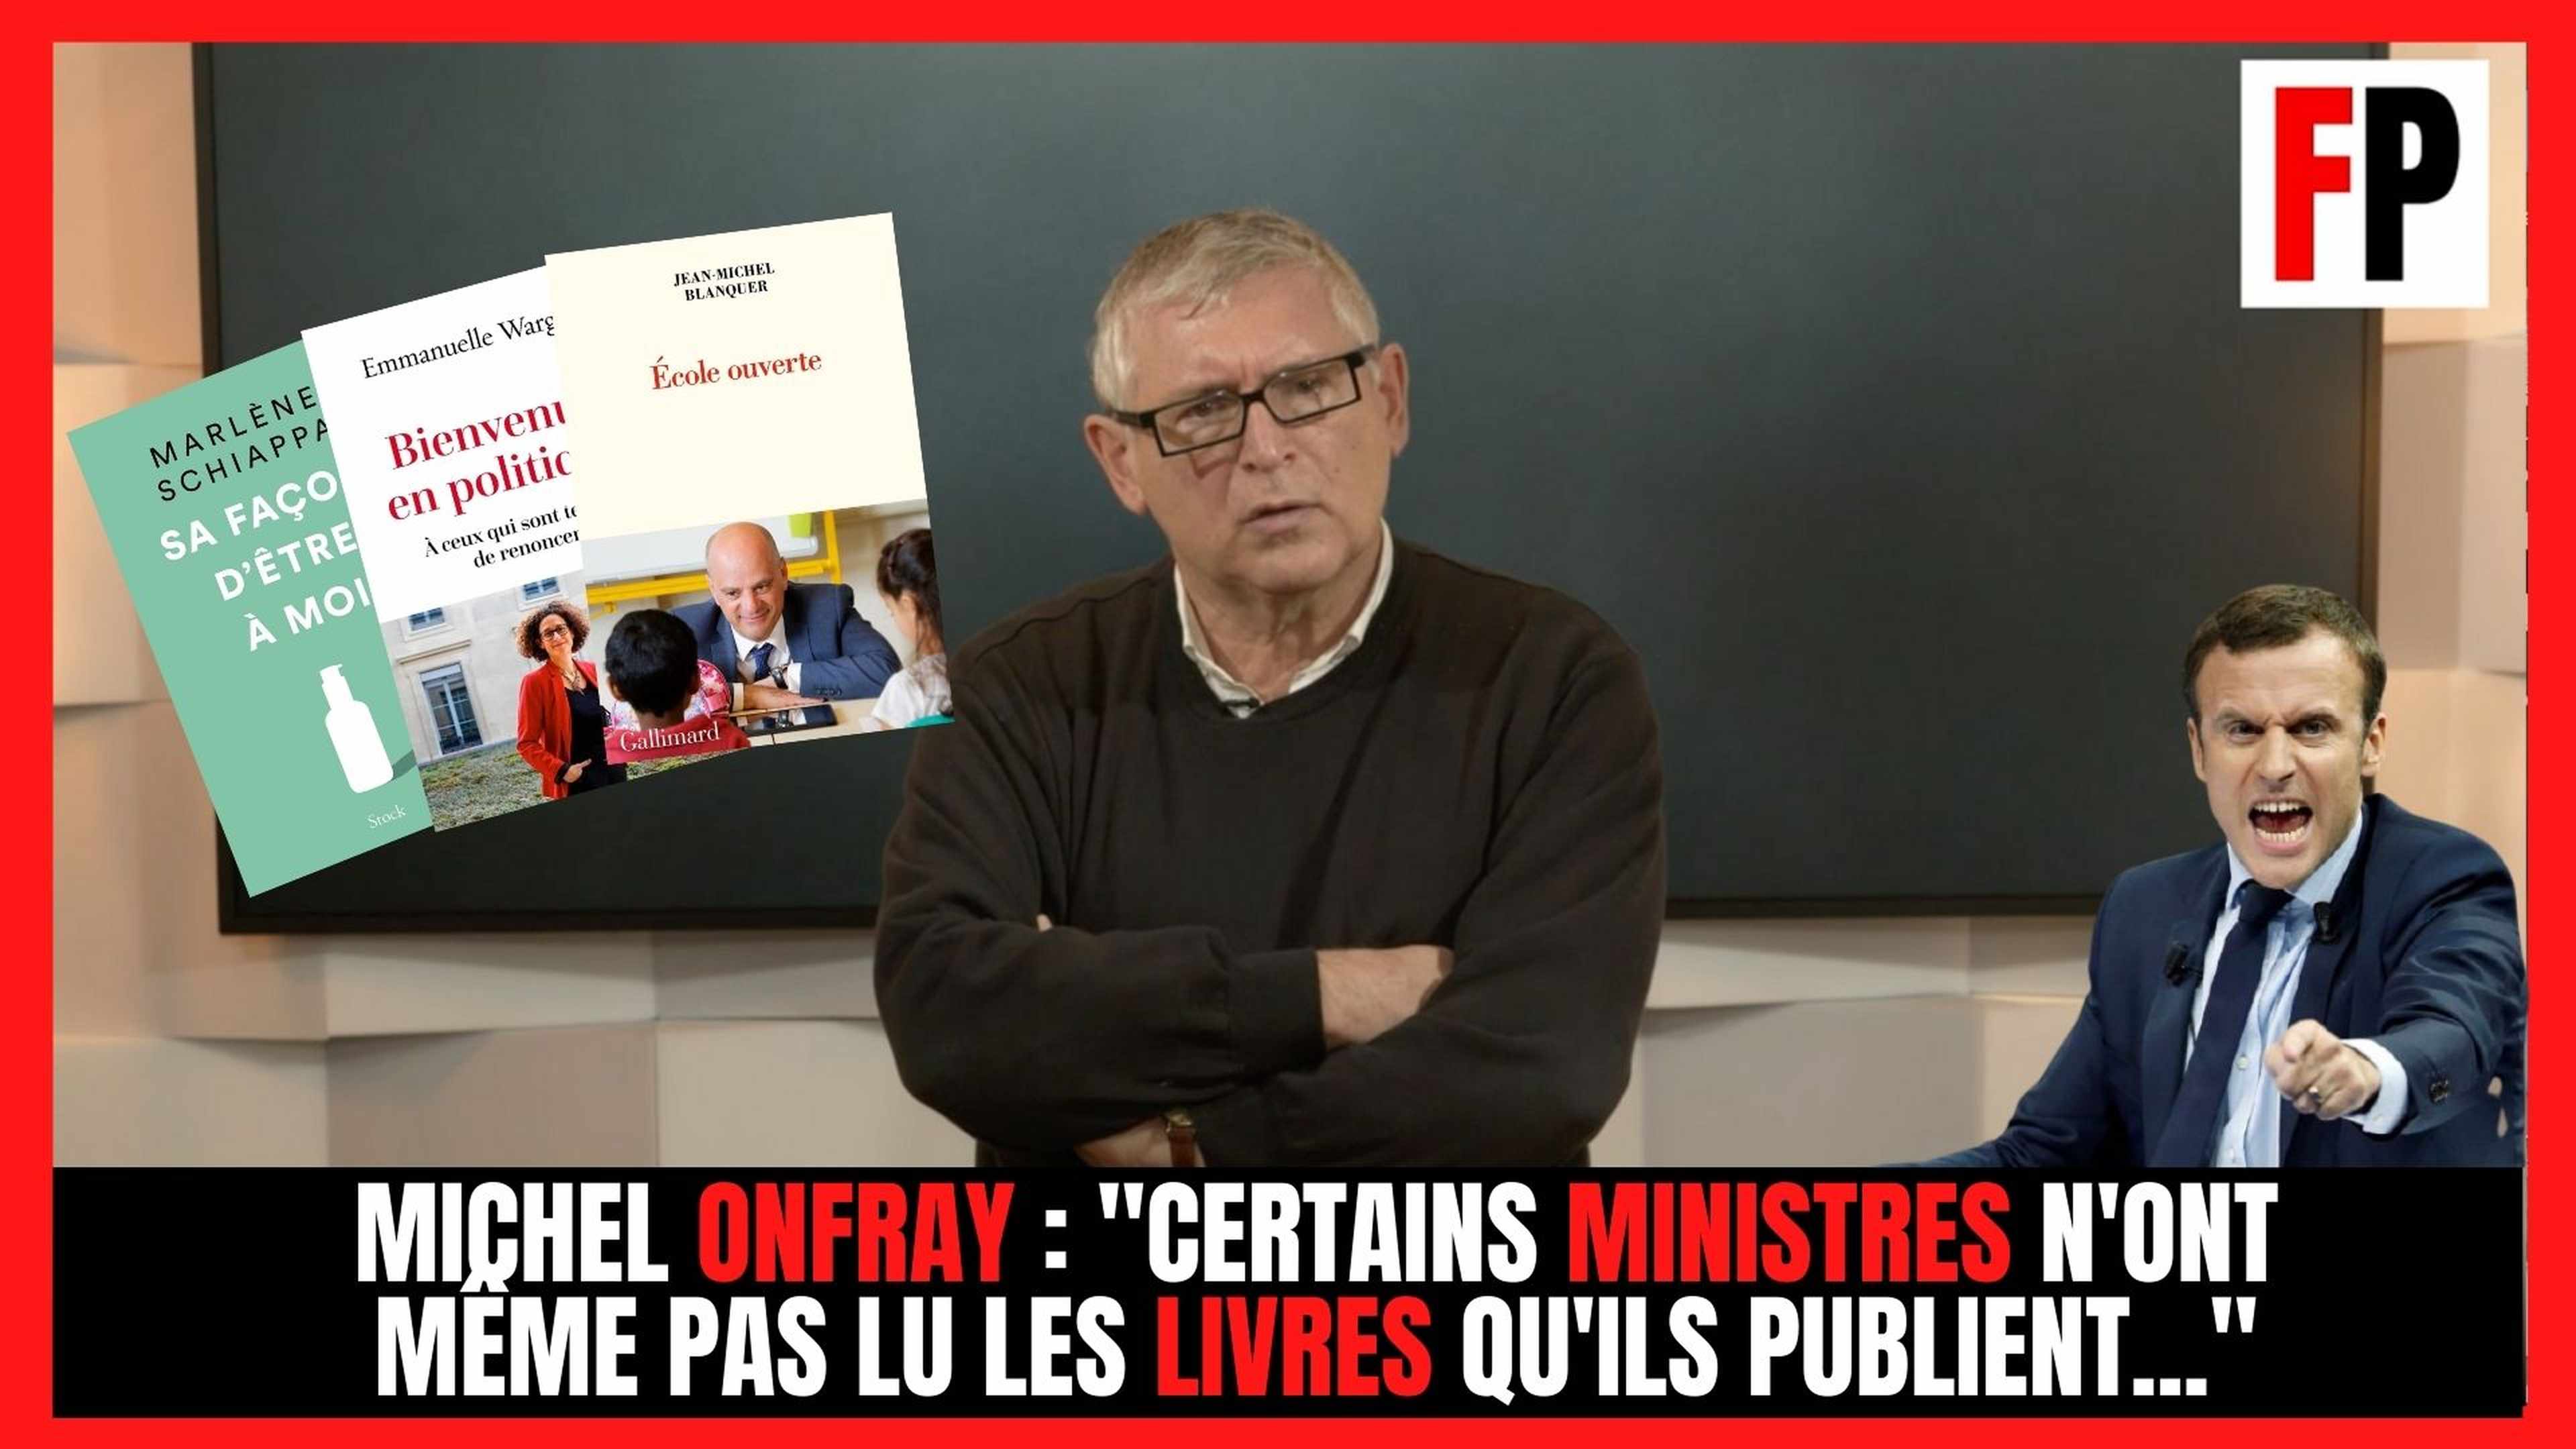 Michel Onfray : "Certains ministres n'ont même pas lu les livres qu'ils publient..."